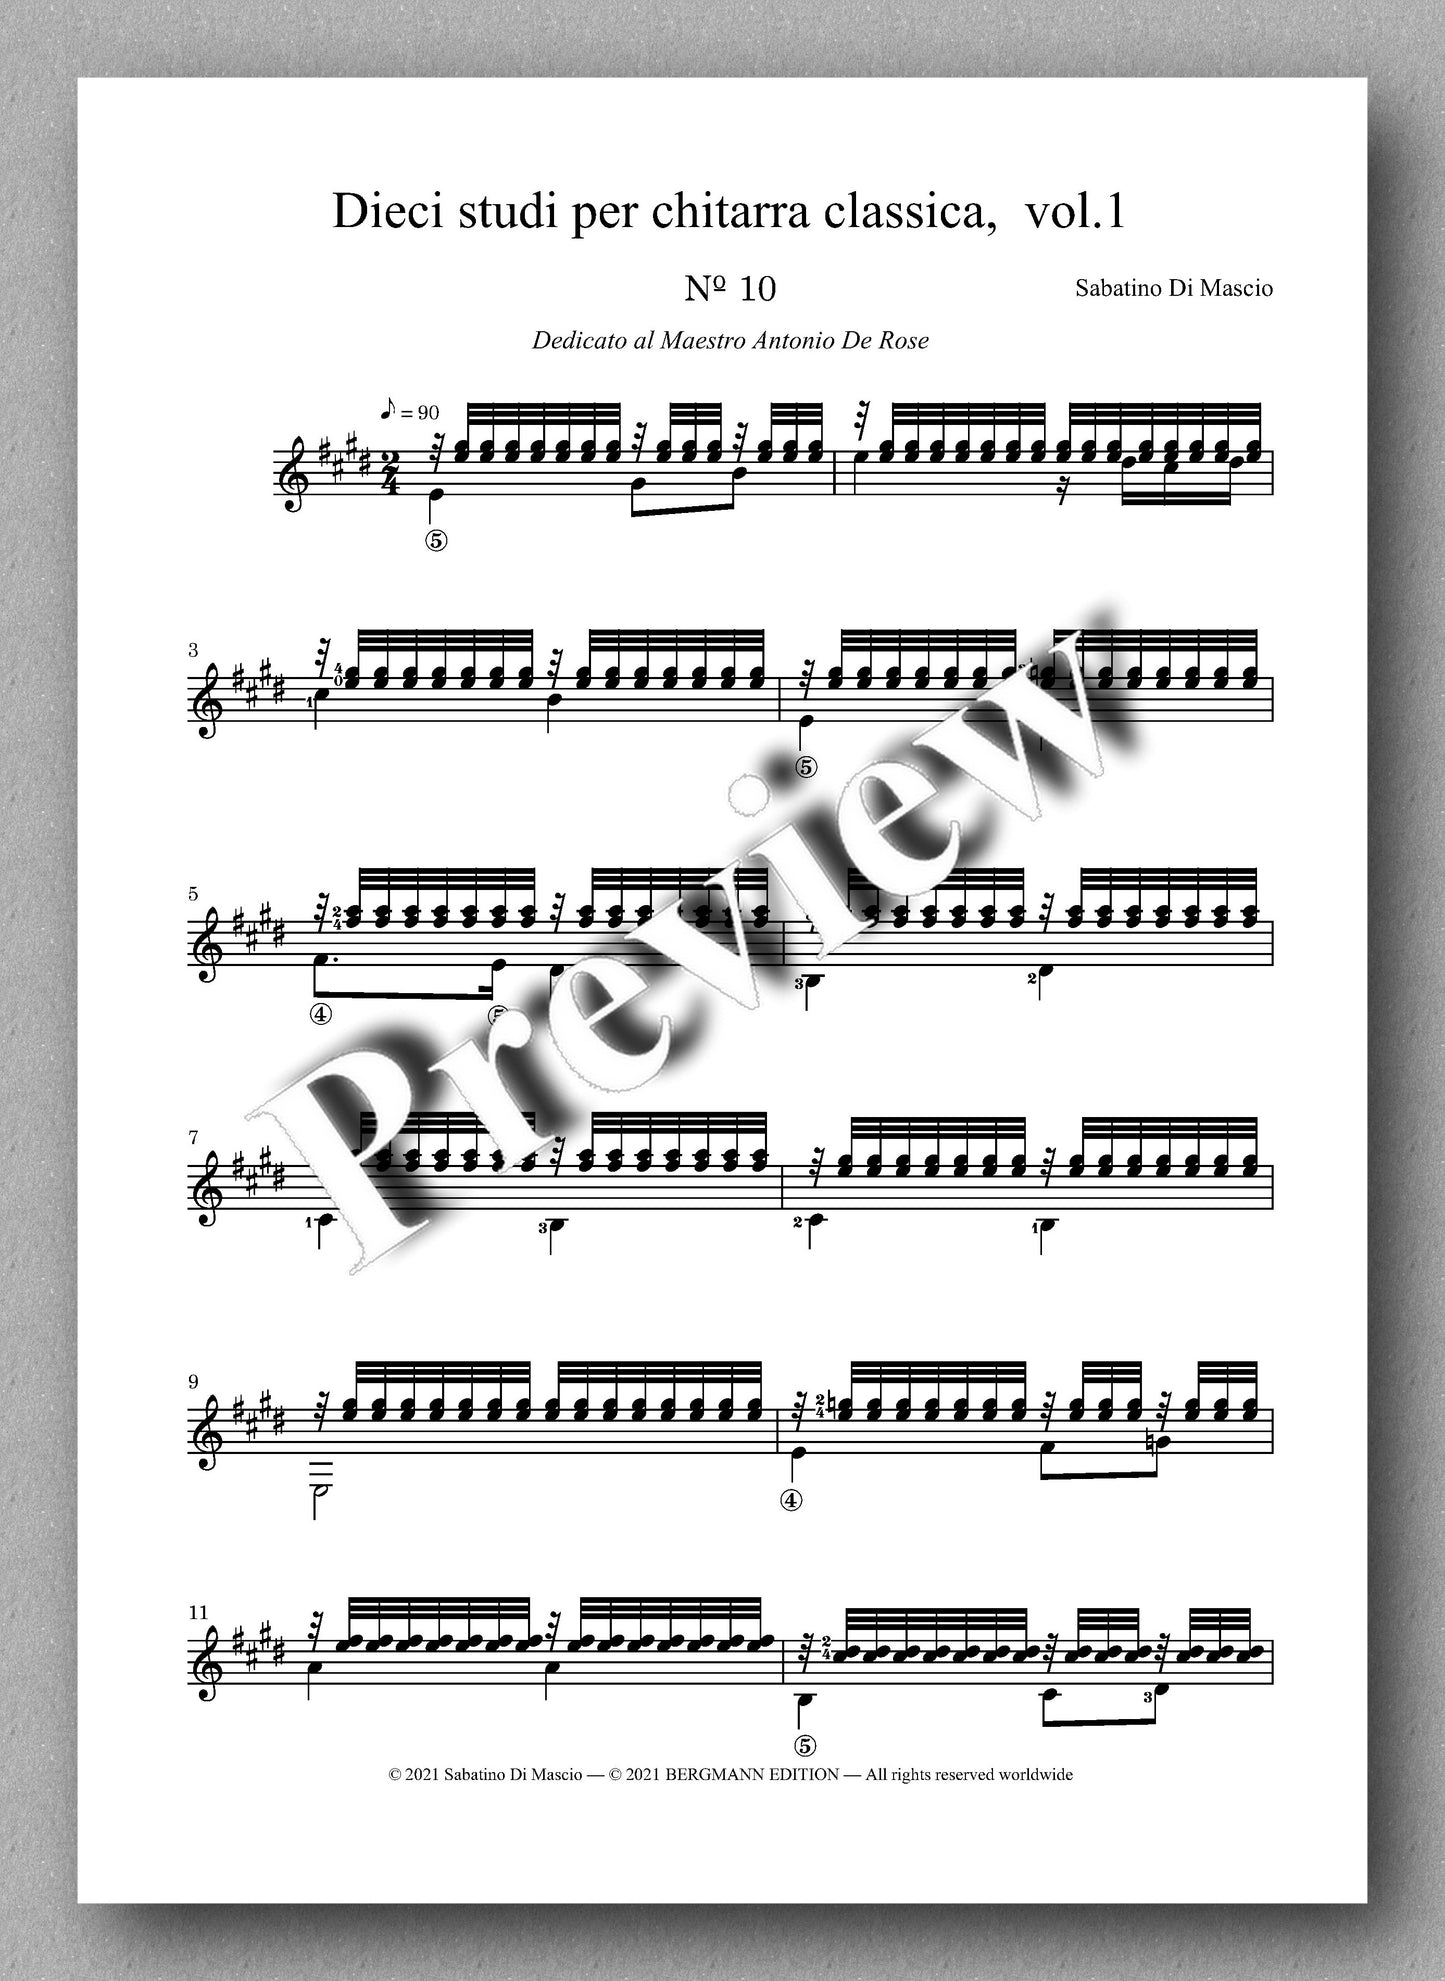 Di Mascio, Dieci studi per chitarra, Vol. 1 - music score 4